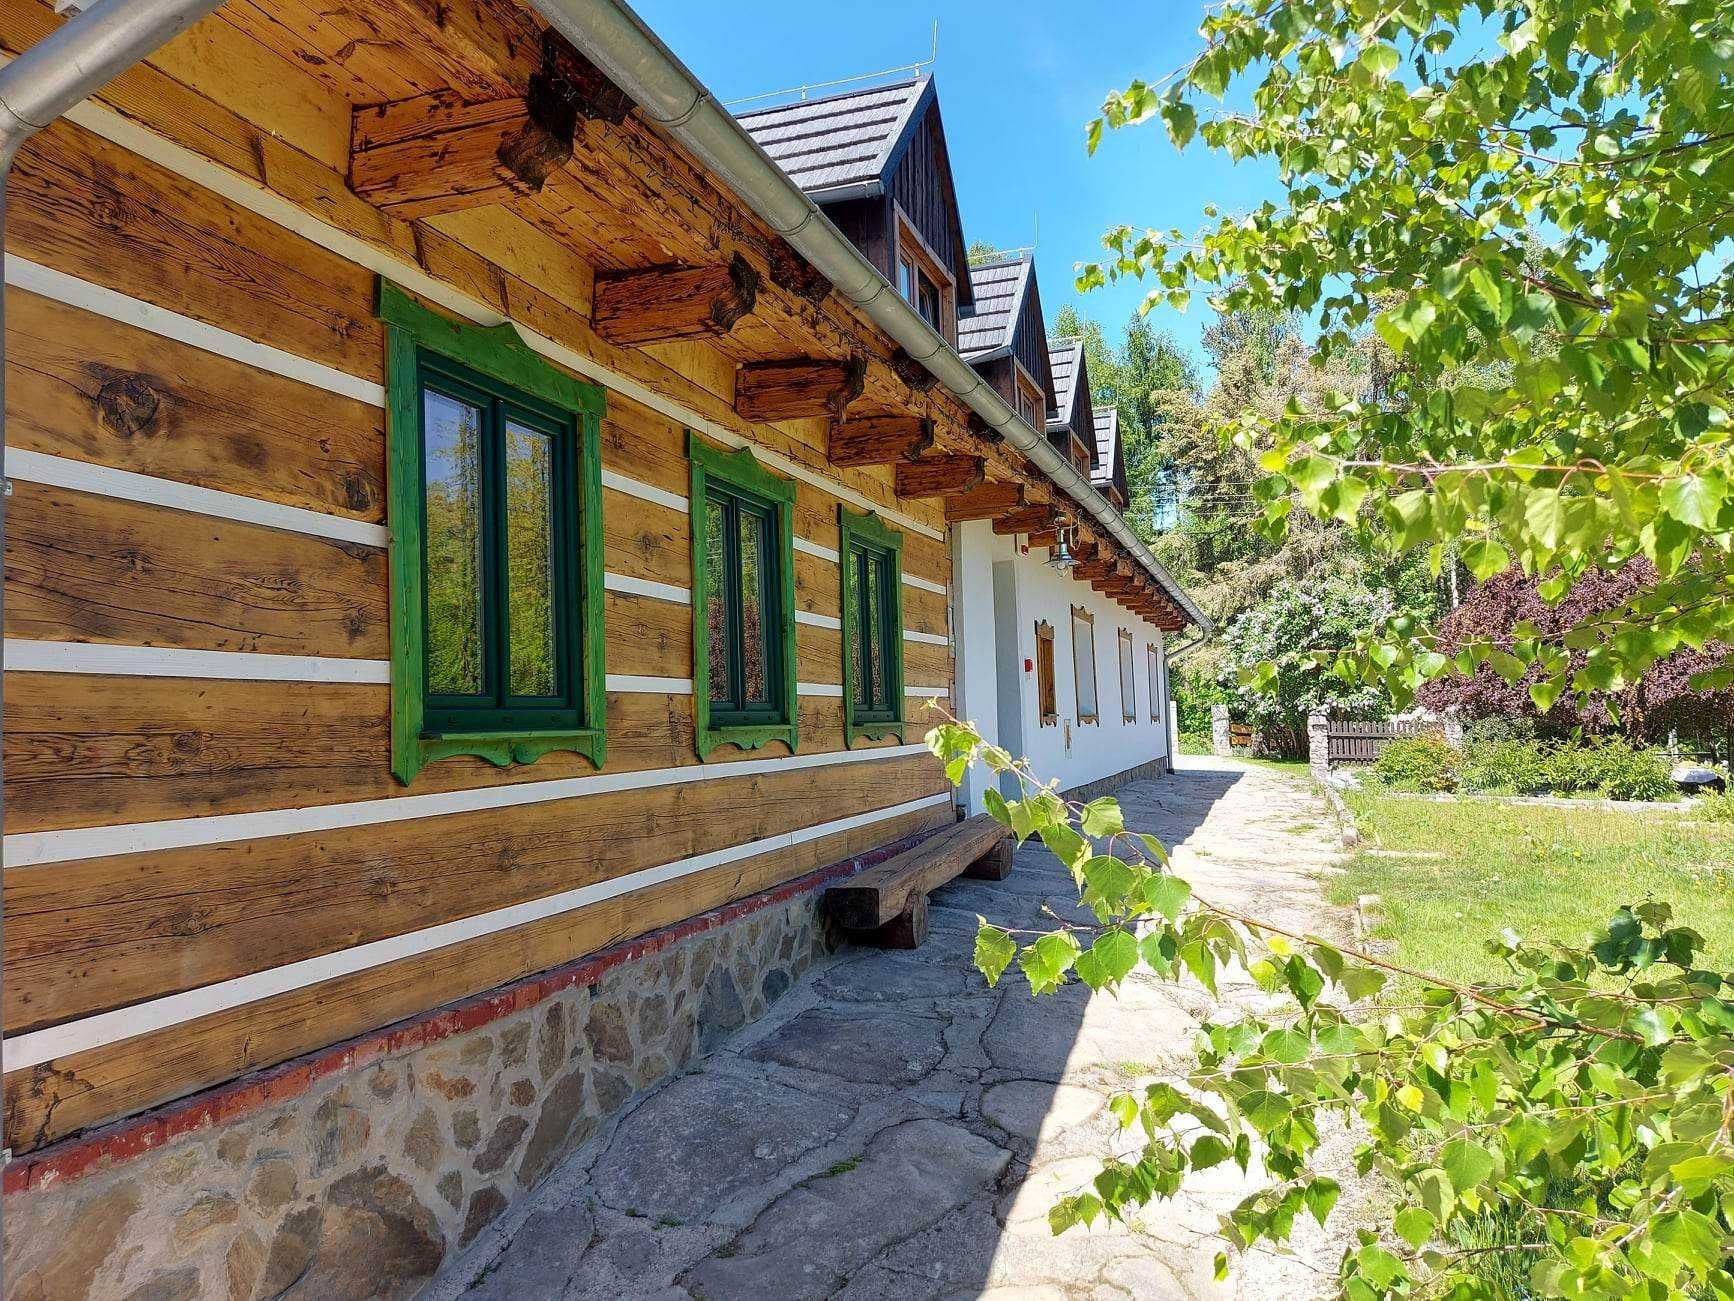 Dom w górach do wynajęci max 23 osoby Szklarska Poręba, sauna, jacuzzi